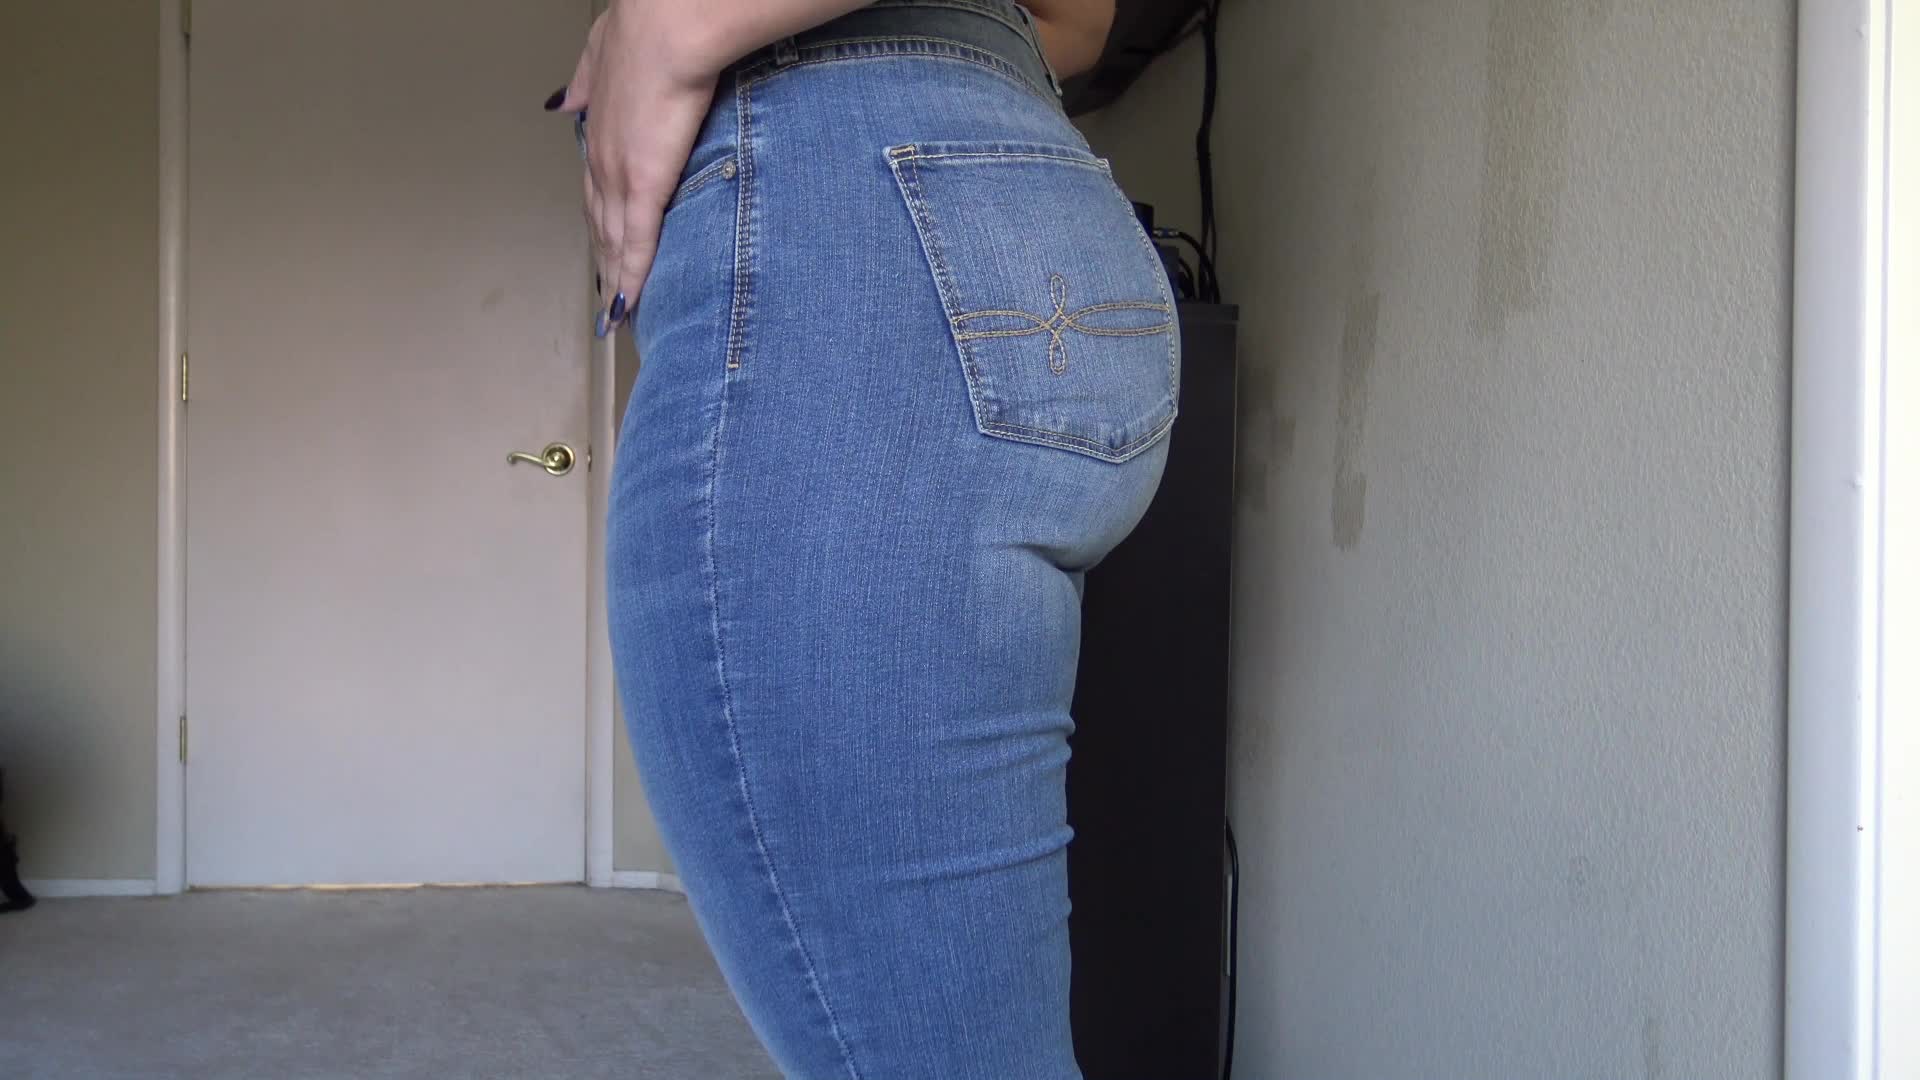 dogan turhan add cum on jeans ass photo